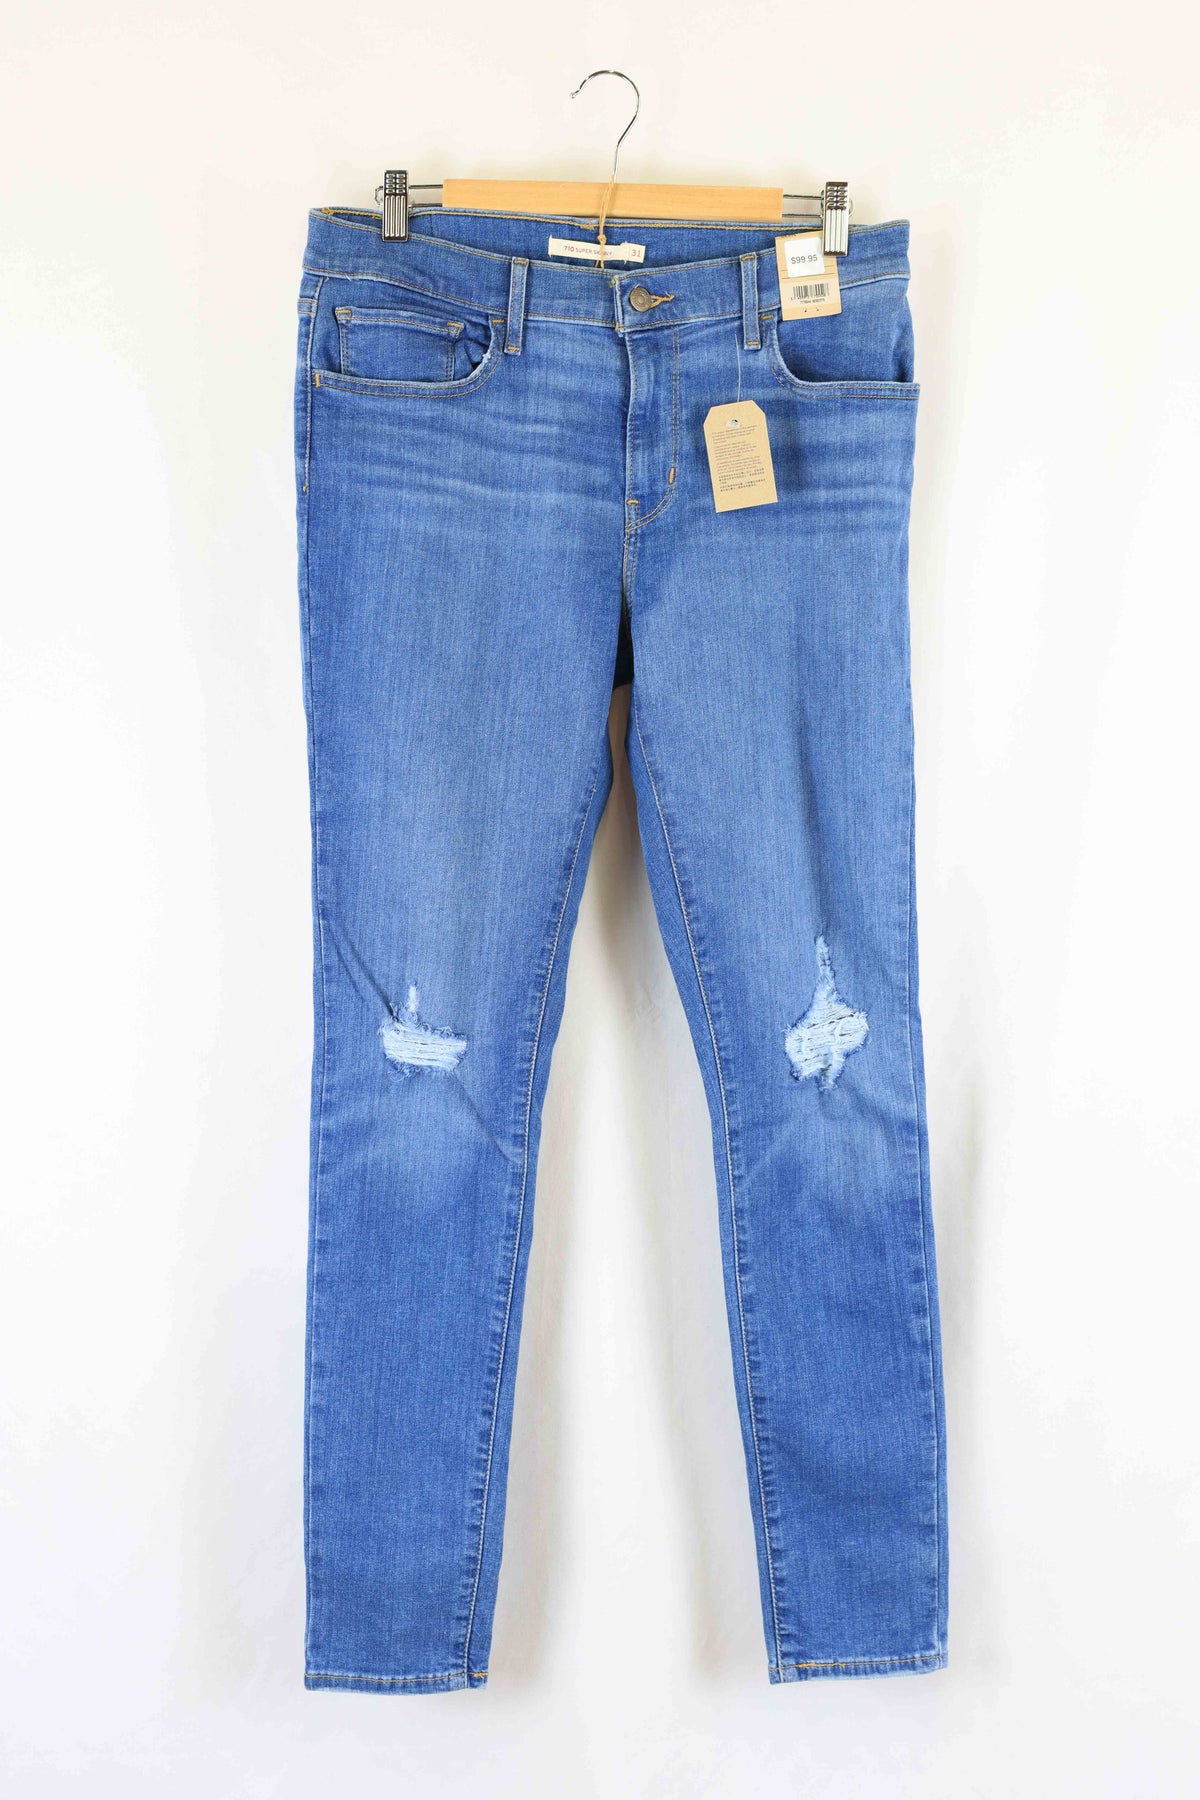 Levis 710 Super skinny Blue Jeans 13